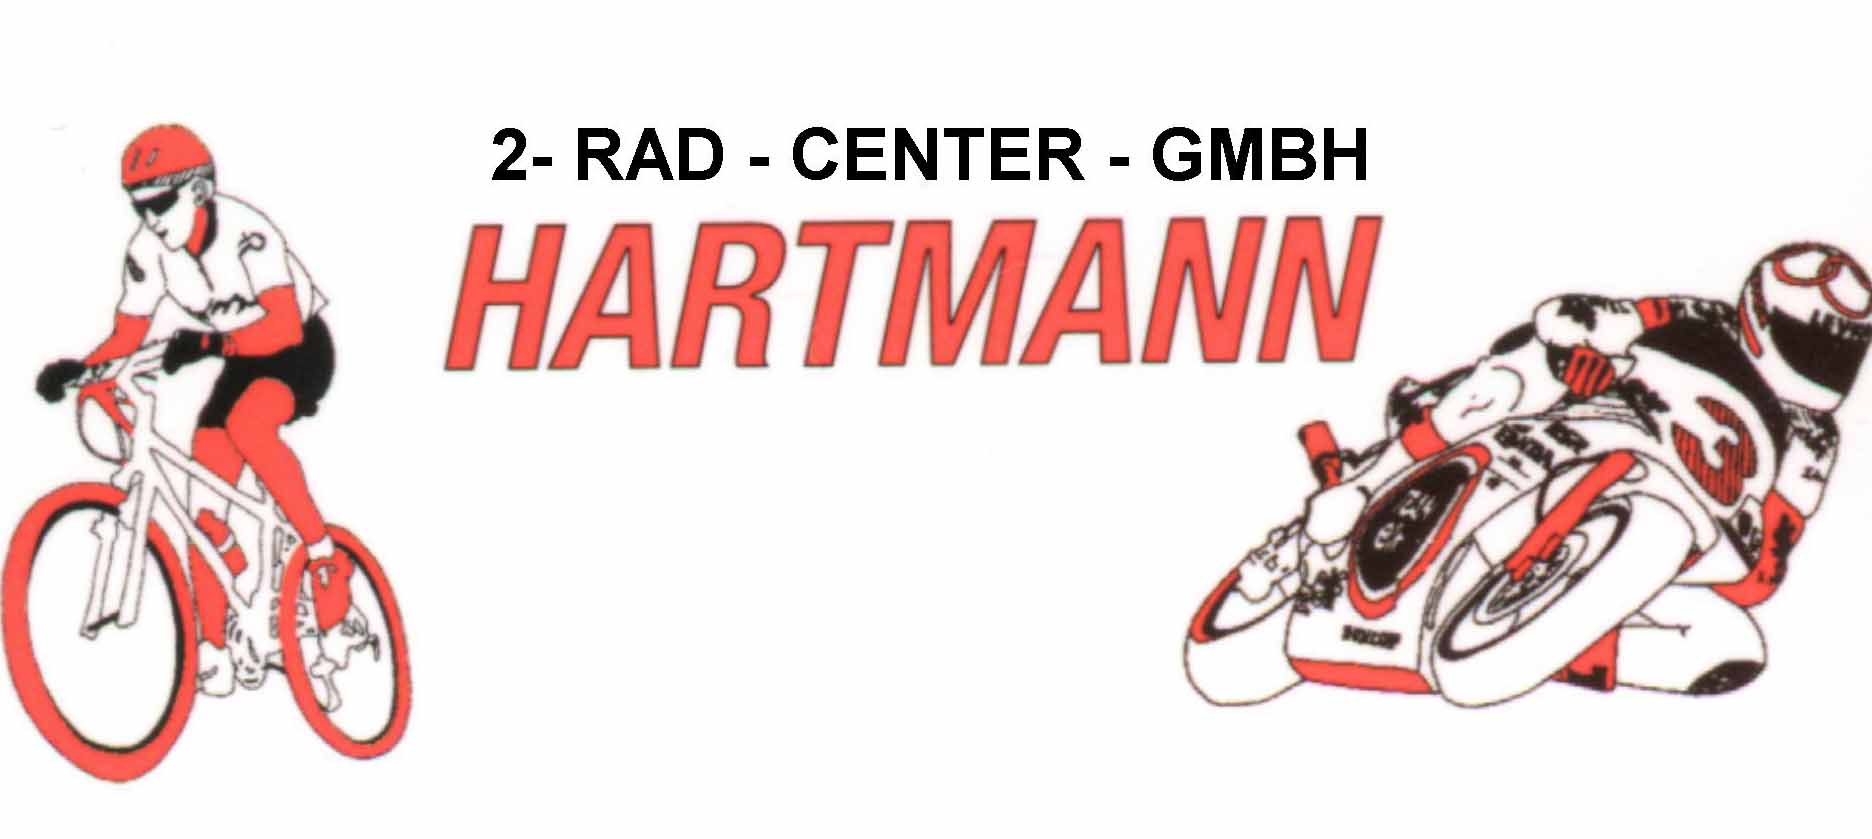  Hartmann 2-Rad-Center GmbH